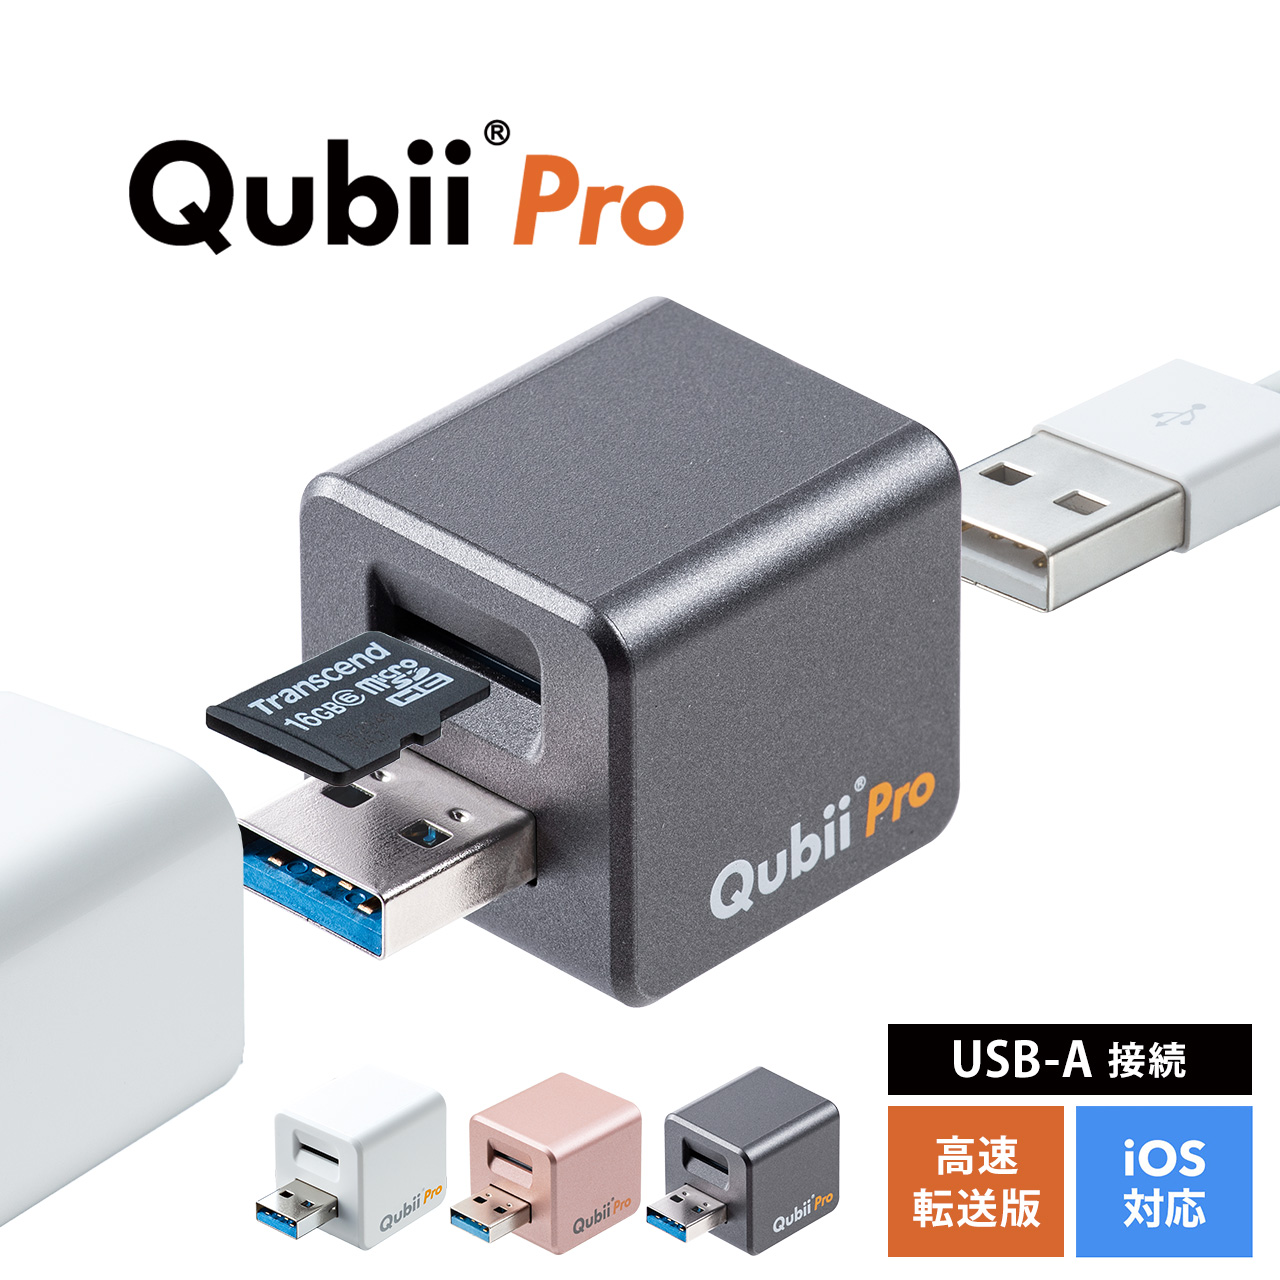 qubii iPhoneバックアップ iPadバックアップ iPhoneカードリーダー 自動 microSD 充電 カードリーダ ライタ qubii  データ保存 400-ADRIP010W : 400-adrip010w : サンワダイレクト - 通販 - Yahoo!ショッピング